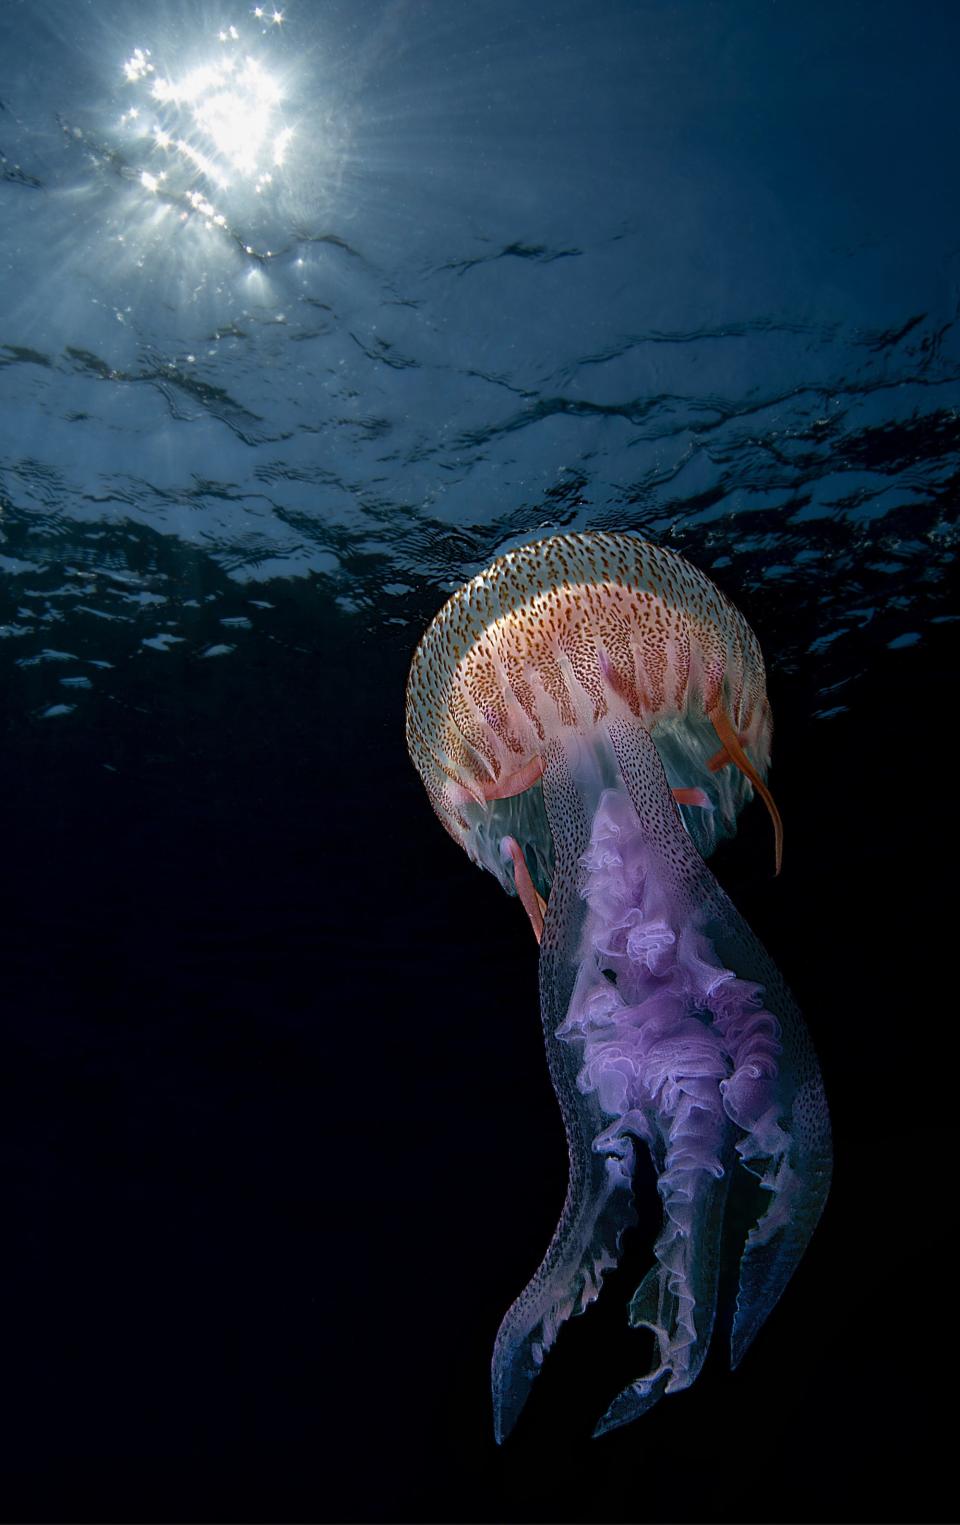 Jellyfish (Pelagia nocticula) in Noli, Italy.